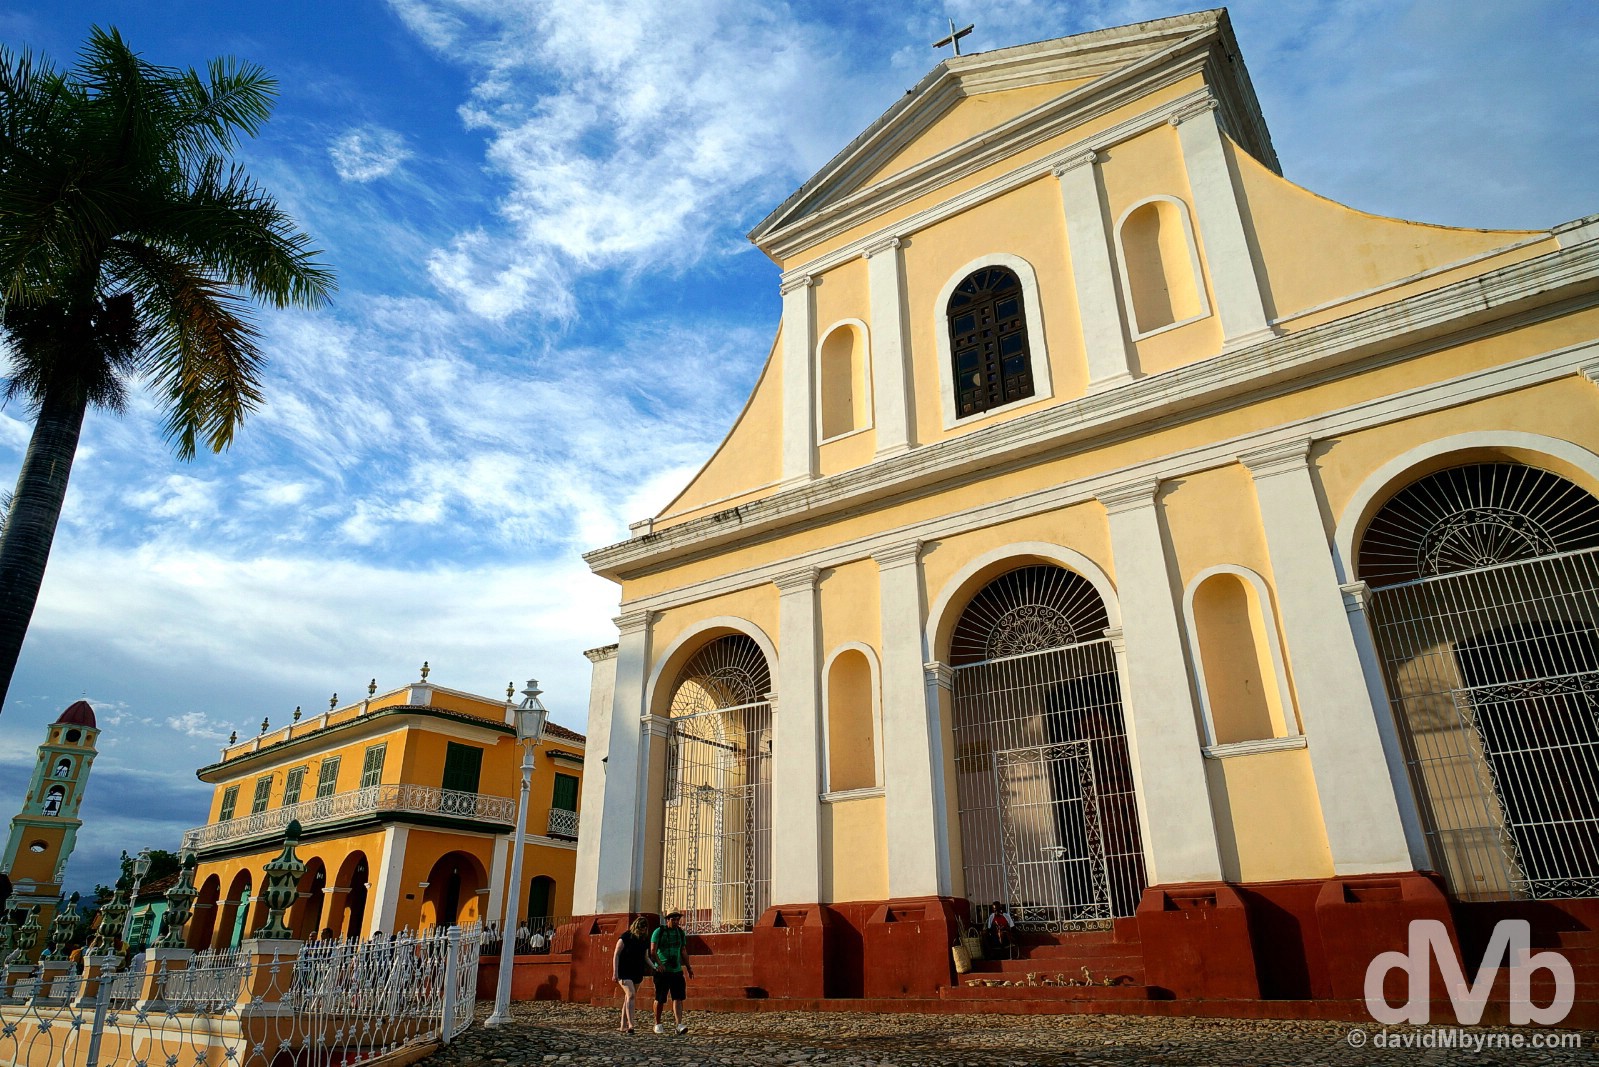 The facade of the Iglesia Parroquial de la Santisima Trinidad overlooking Plaza Mayor in Trinidad, Cuba. May 5, 2015. 